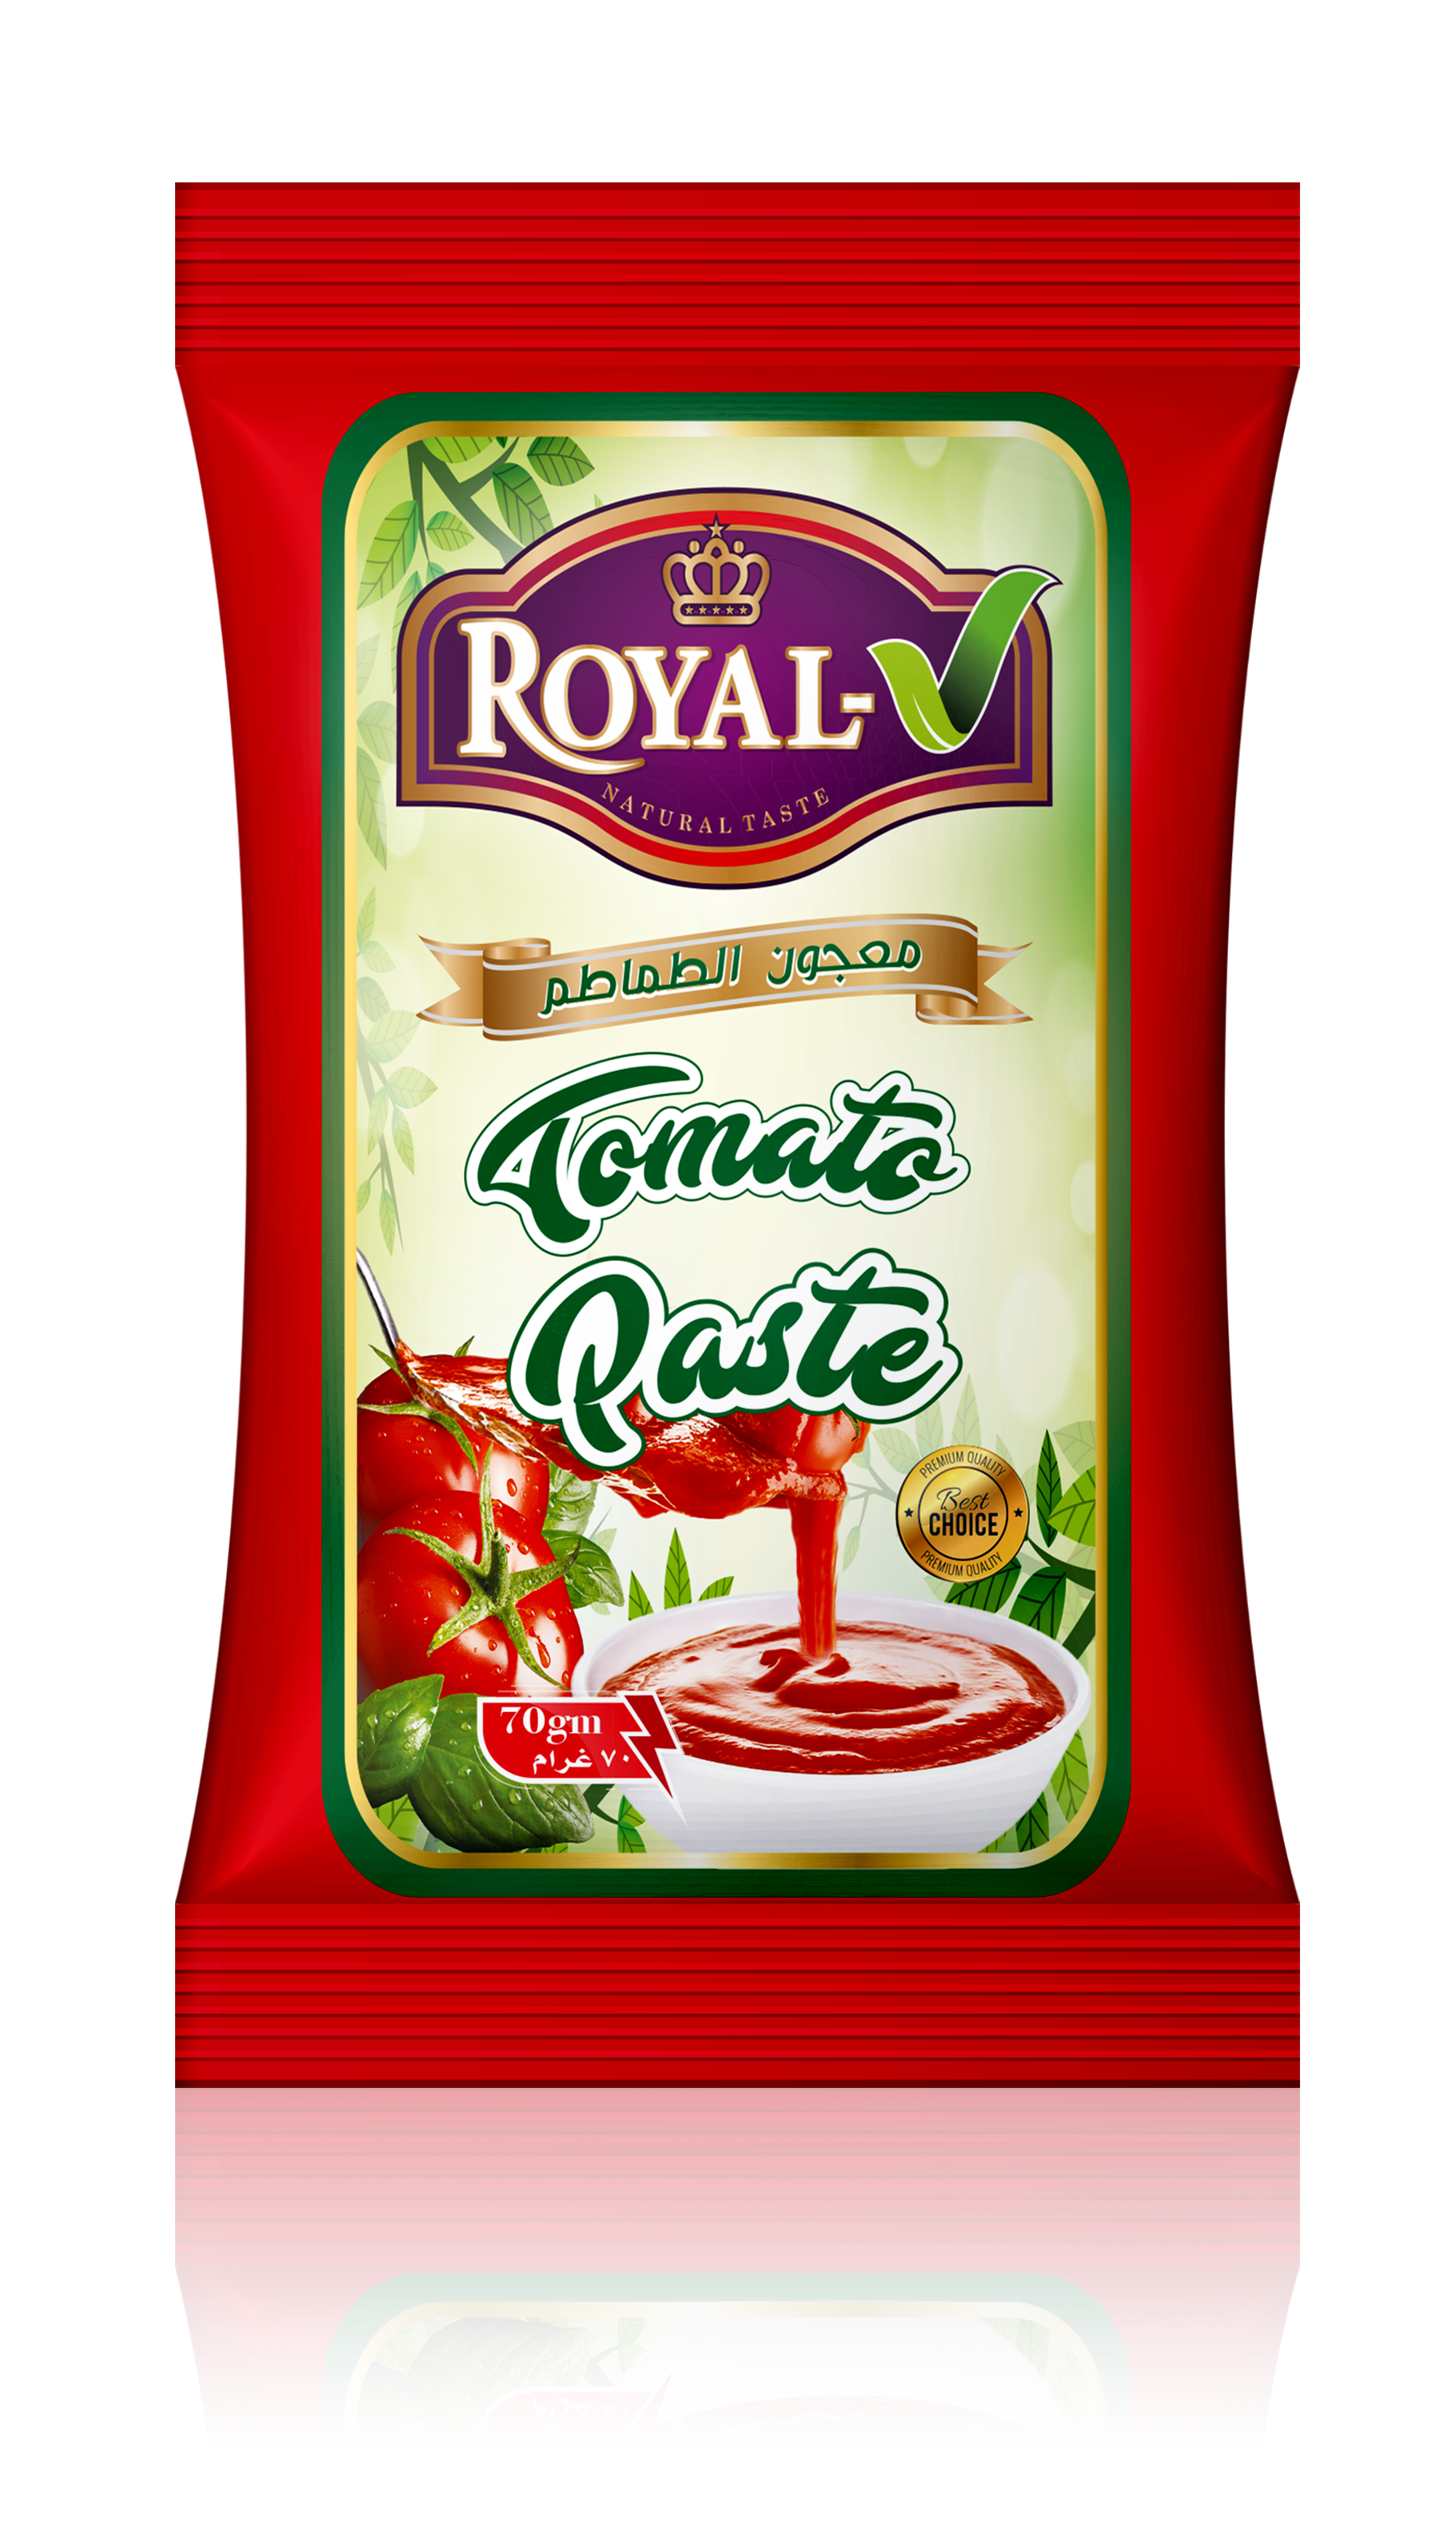 Royal V Tomato Paste